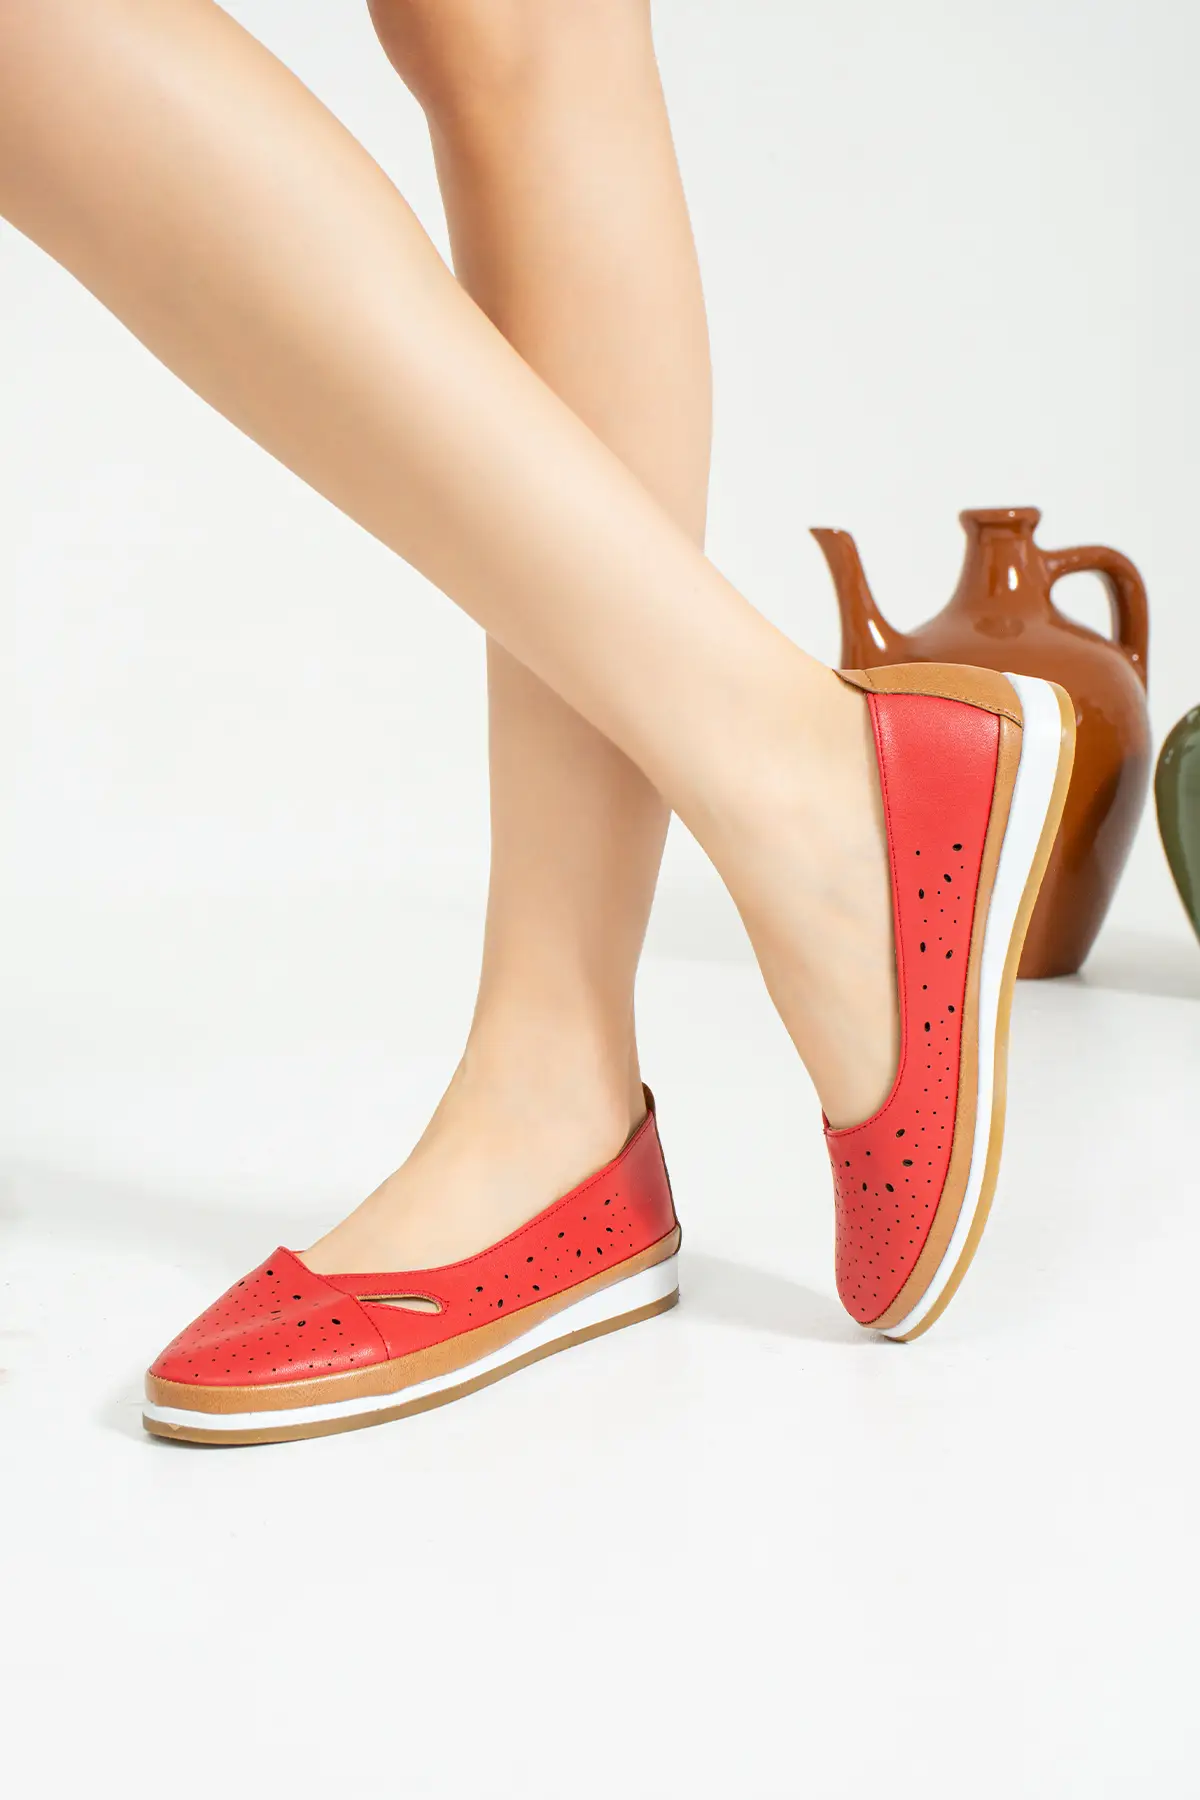 Pembe Potin Anatomik Taban Lazer Kesim İç Astarı Deri Moda Kadın Ayakkabı 43-1840-22 - Kırmızı